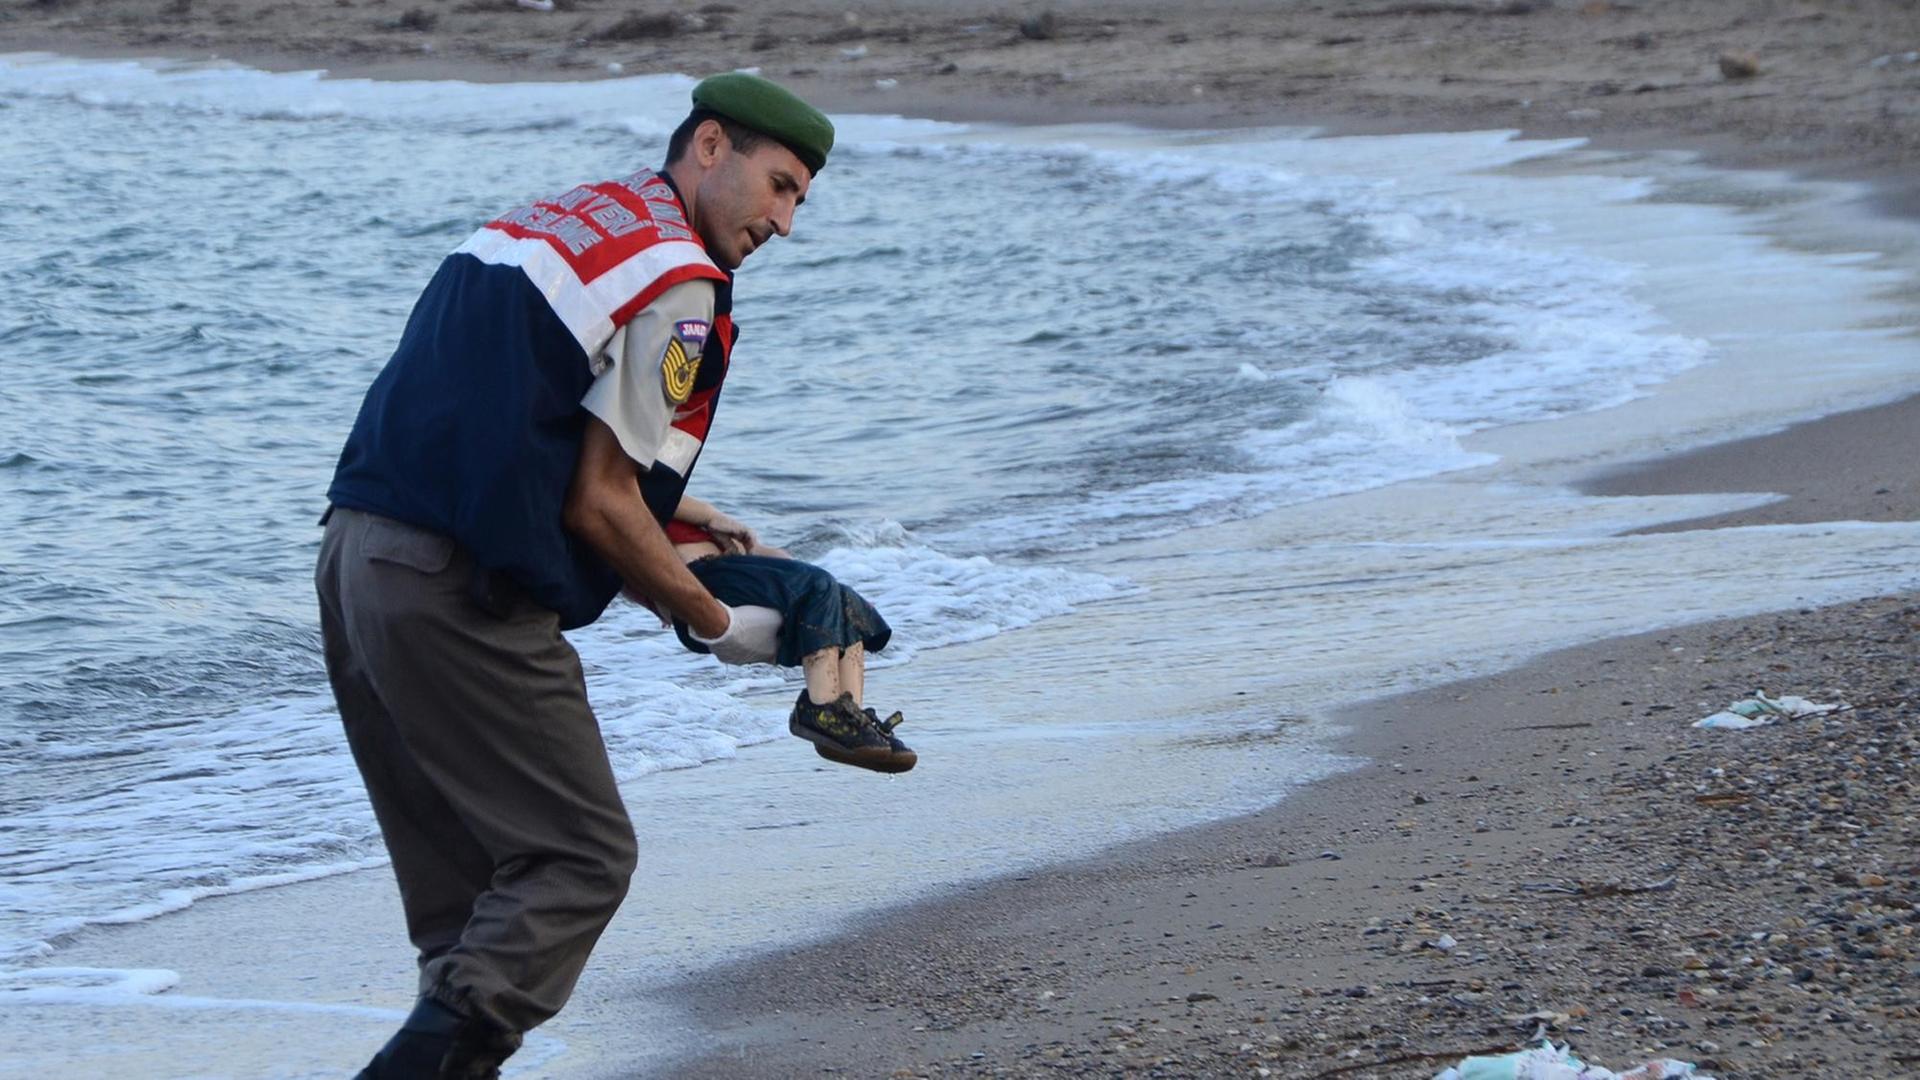 Ein türkischer Polizist trägt ein totes Kind im Arm und bringt es vom Strand weg. Der Oberkörper des Kindes wird vom Körper des Polizisten verdeckt..